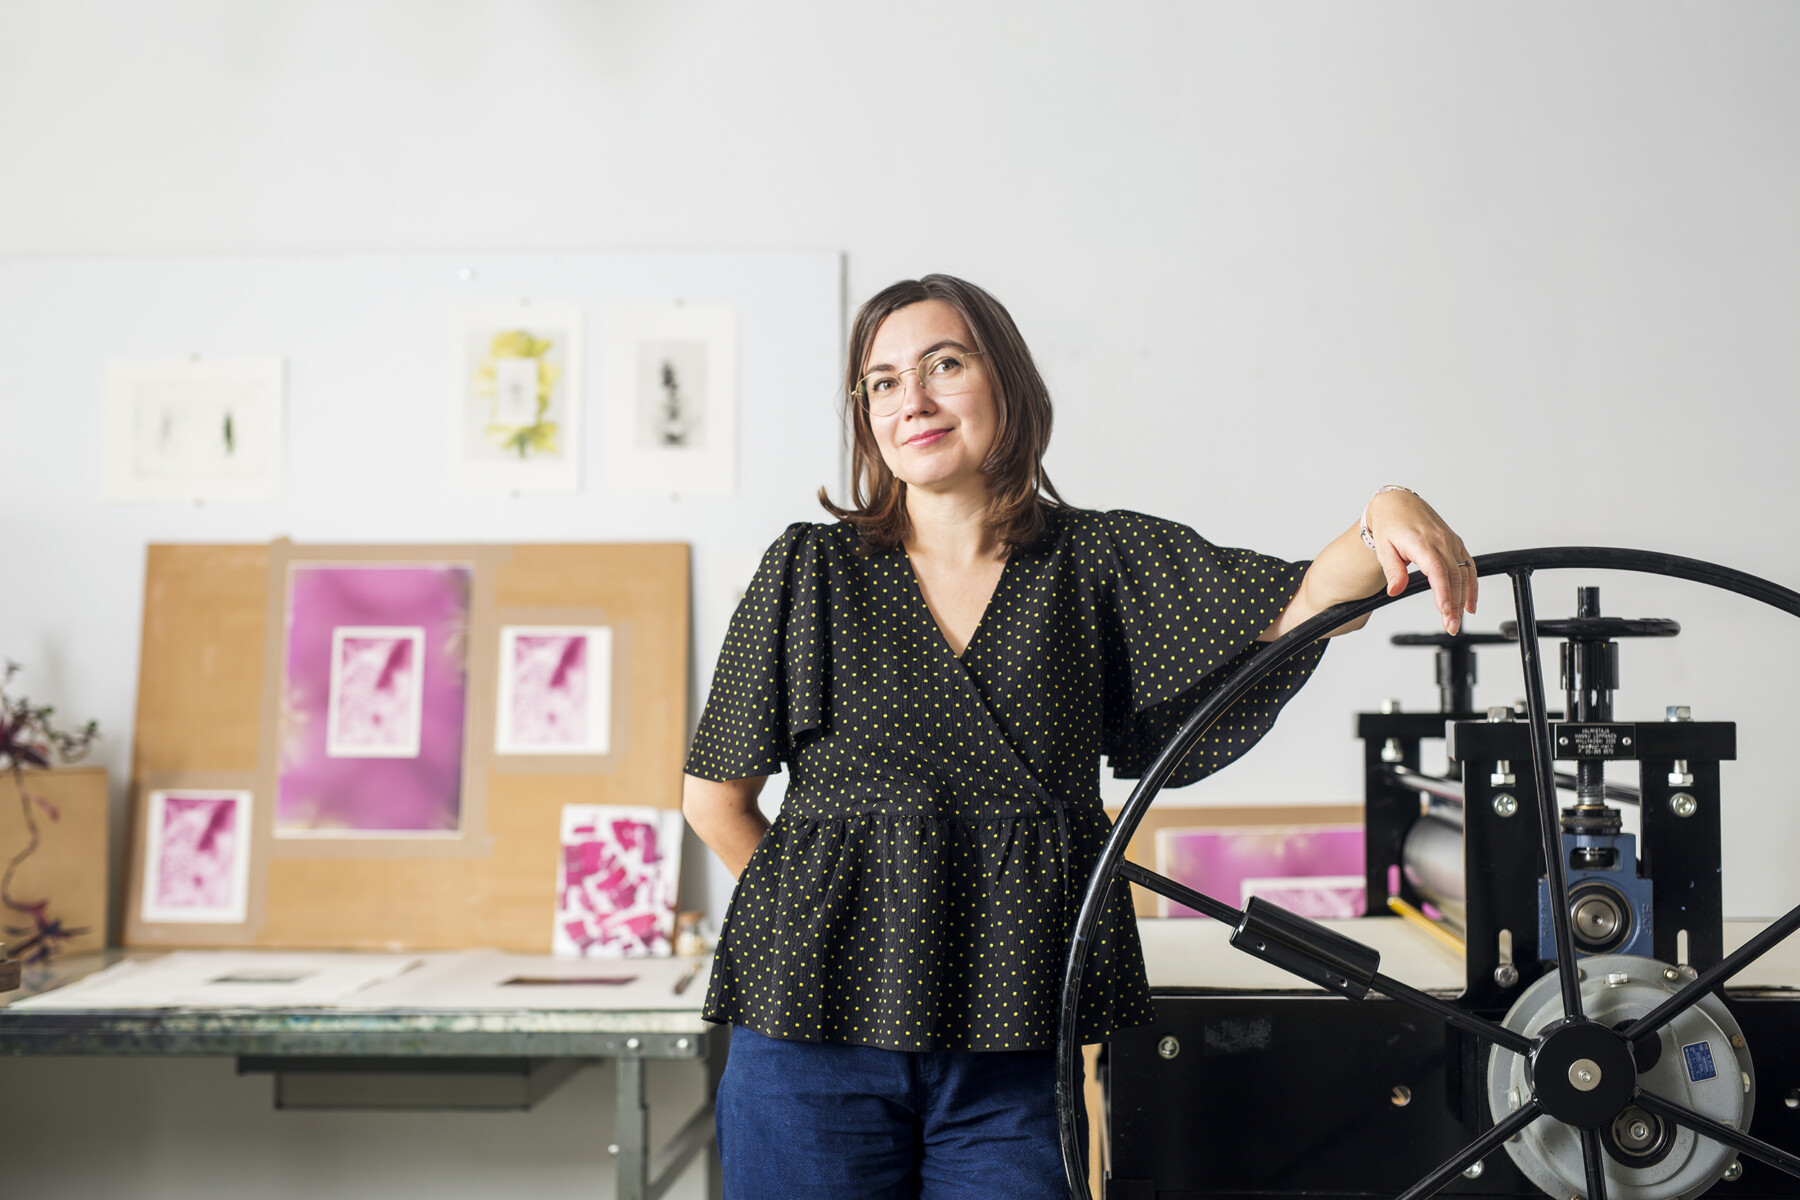 Em um estúdio de arte com gravuras penduradas na parede, uma mulher apoia um braço na manivela de uma impressora antiga.